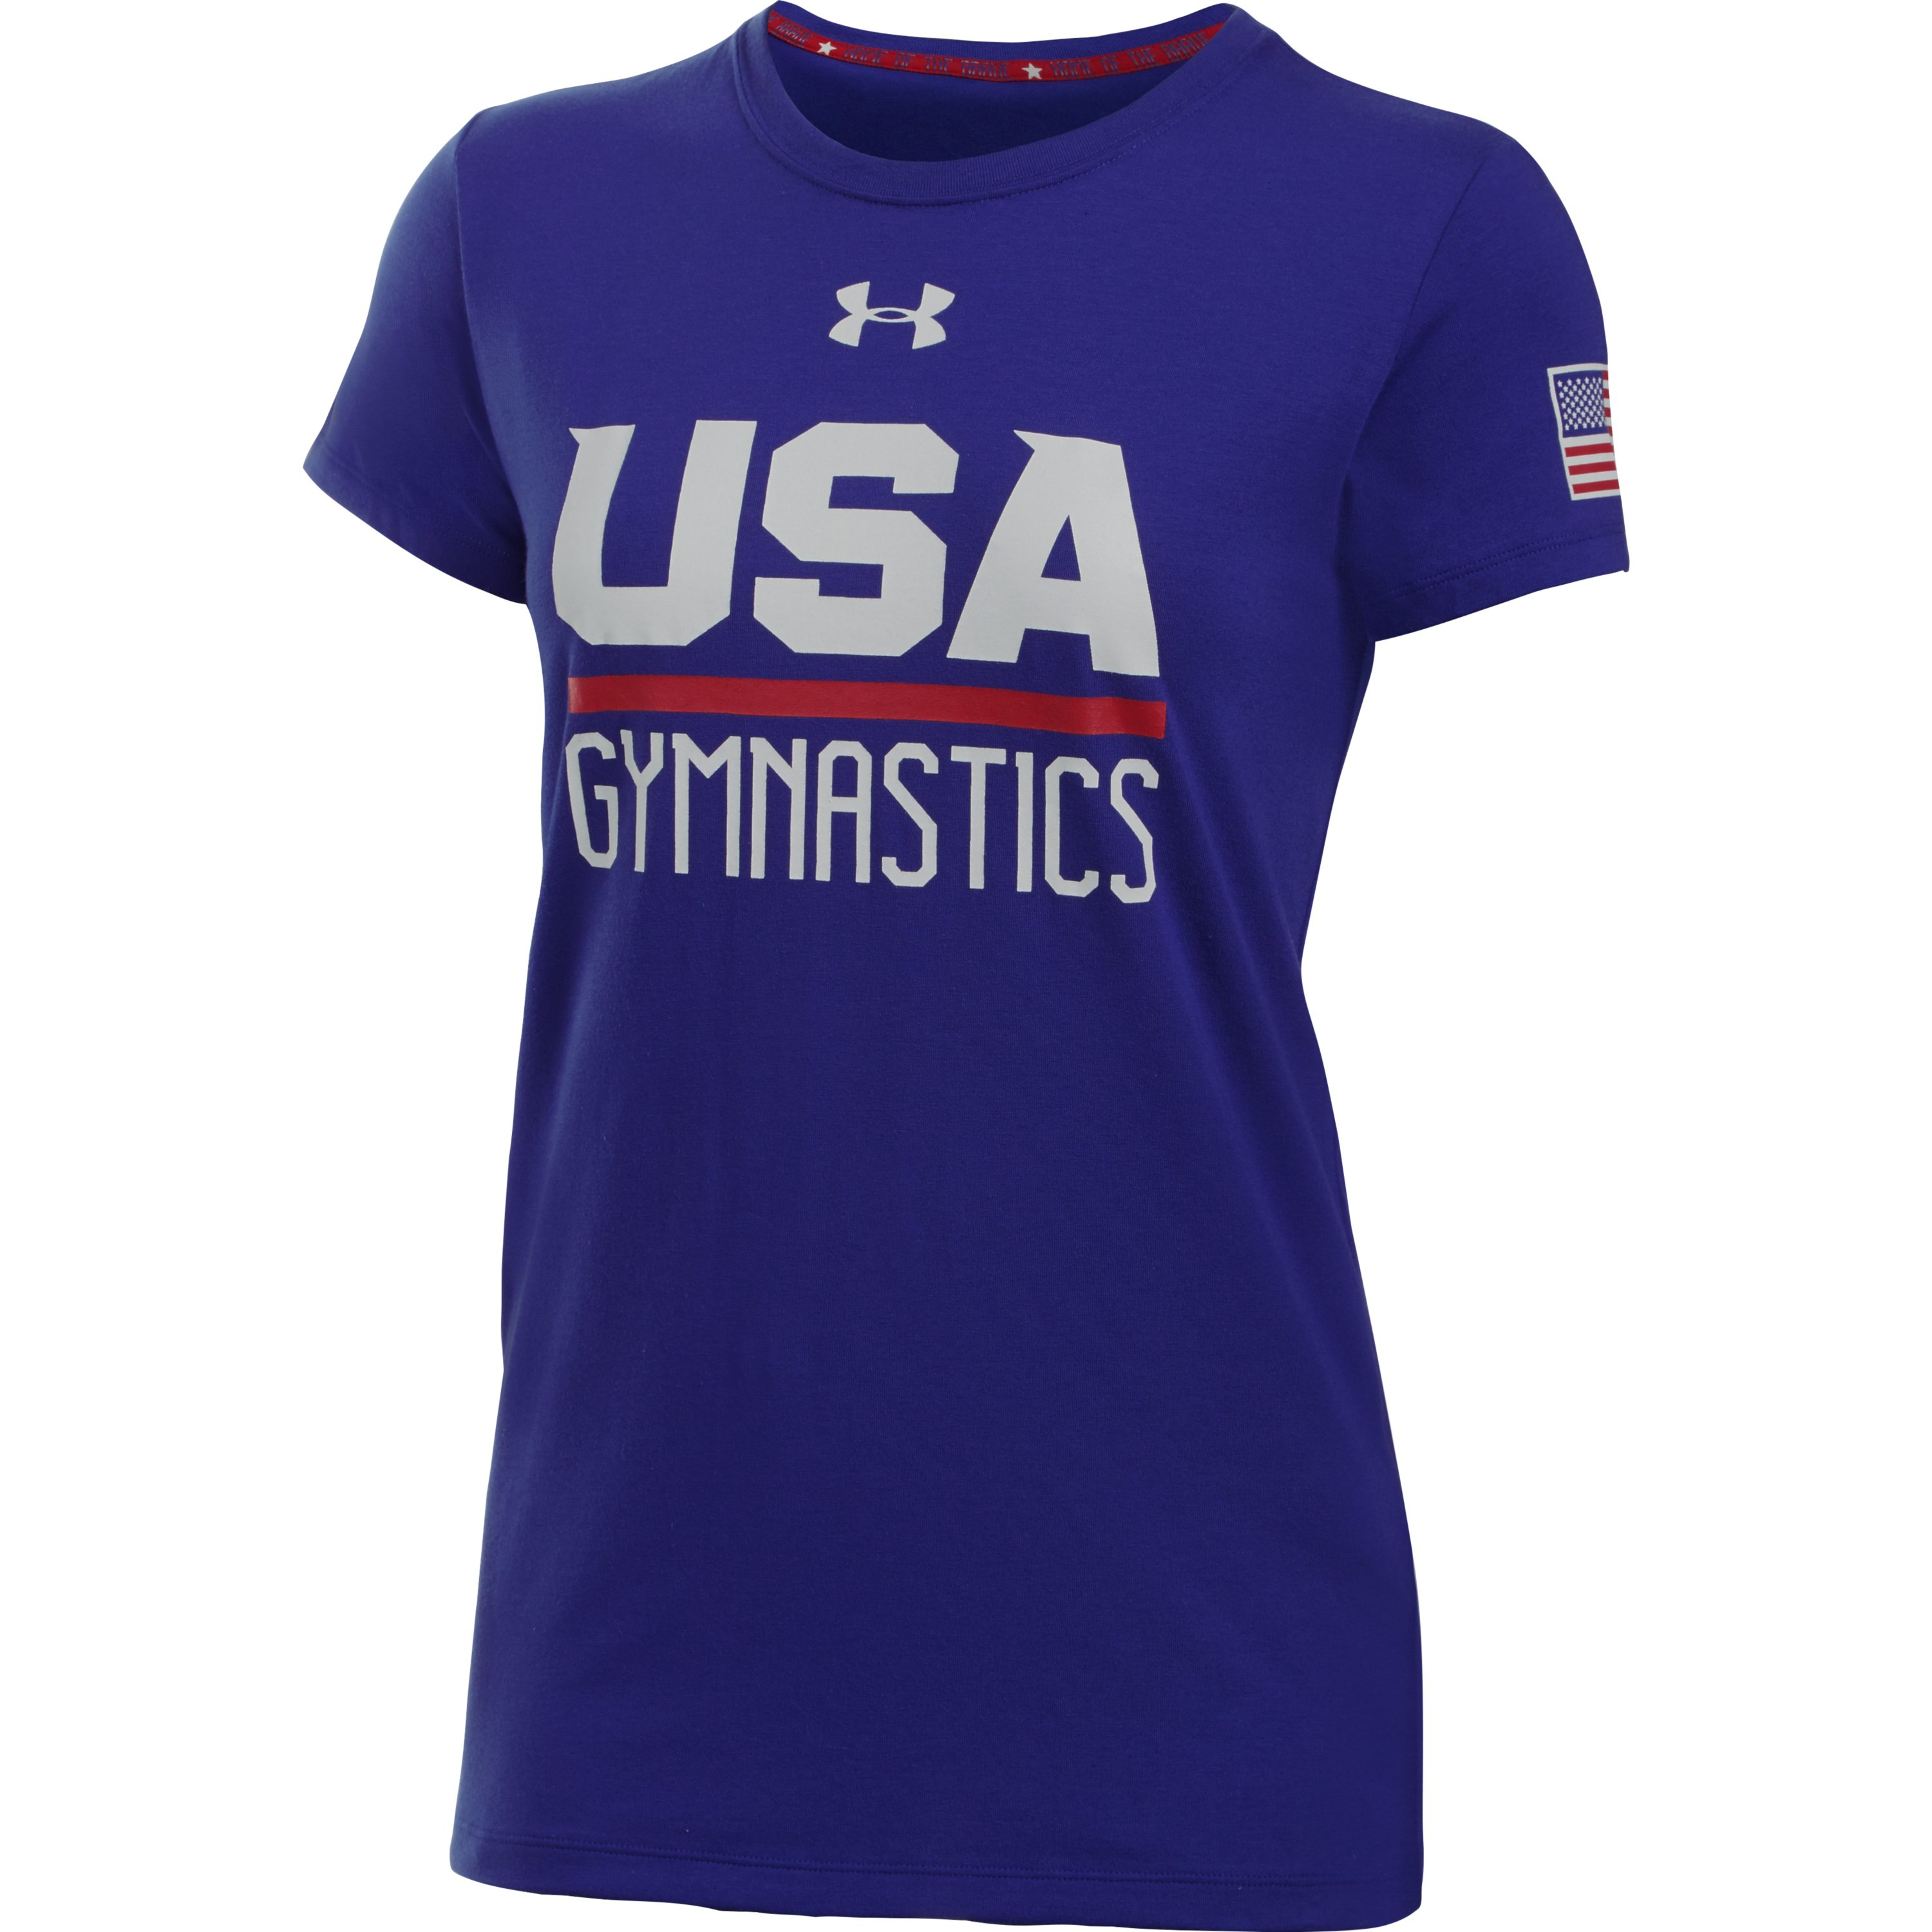 Hombre rico he equivocado Correspondiente a Under Armour Women's Ua Usa Gymnastics Short Sleeve T-shirt in Blue | Lyst